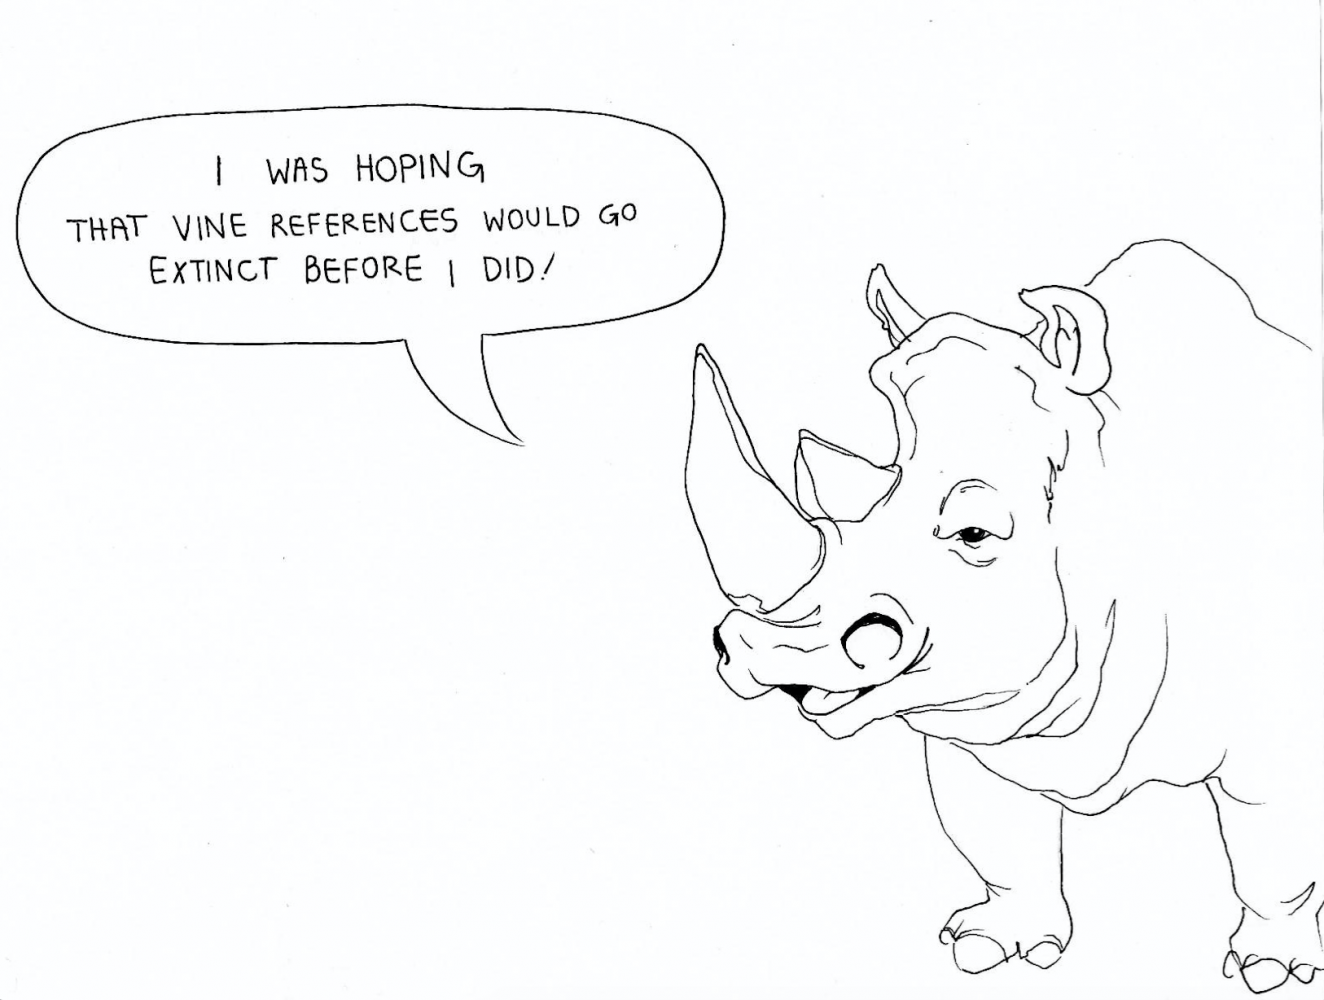 To kill a rhinoceros